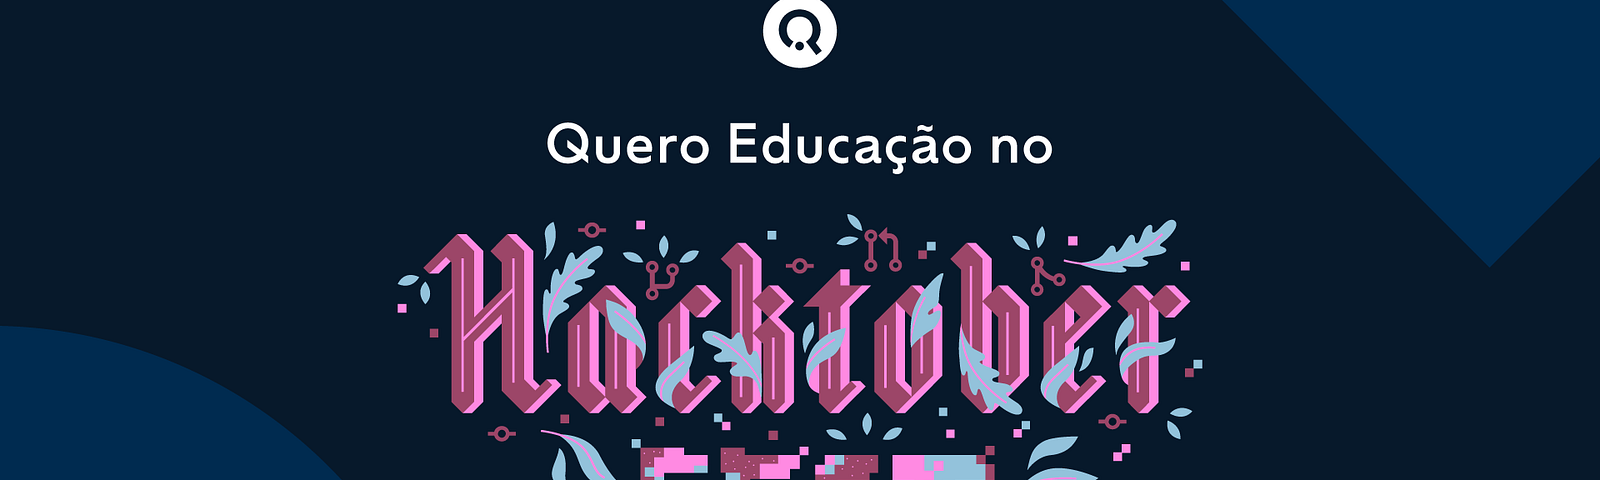 Arte gráfica com as cores azul escuro no fundo e o texto em branco e rosa com a frase "Quero Educação no Hacktoberfest 2020"